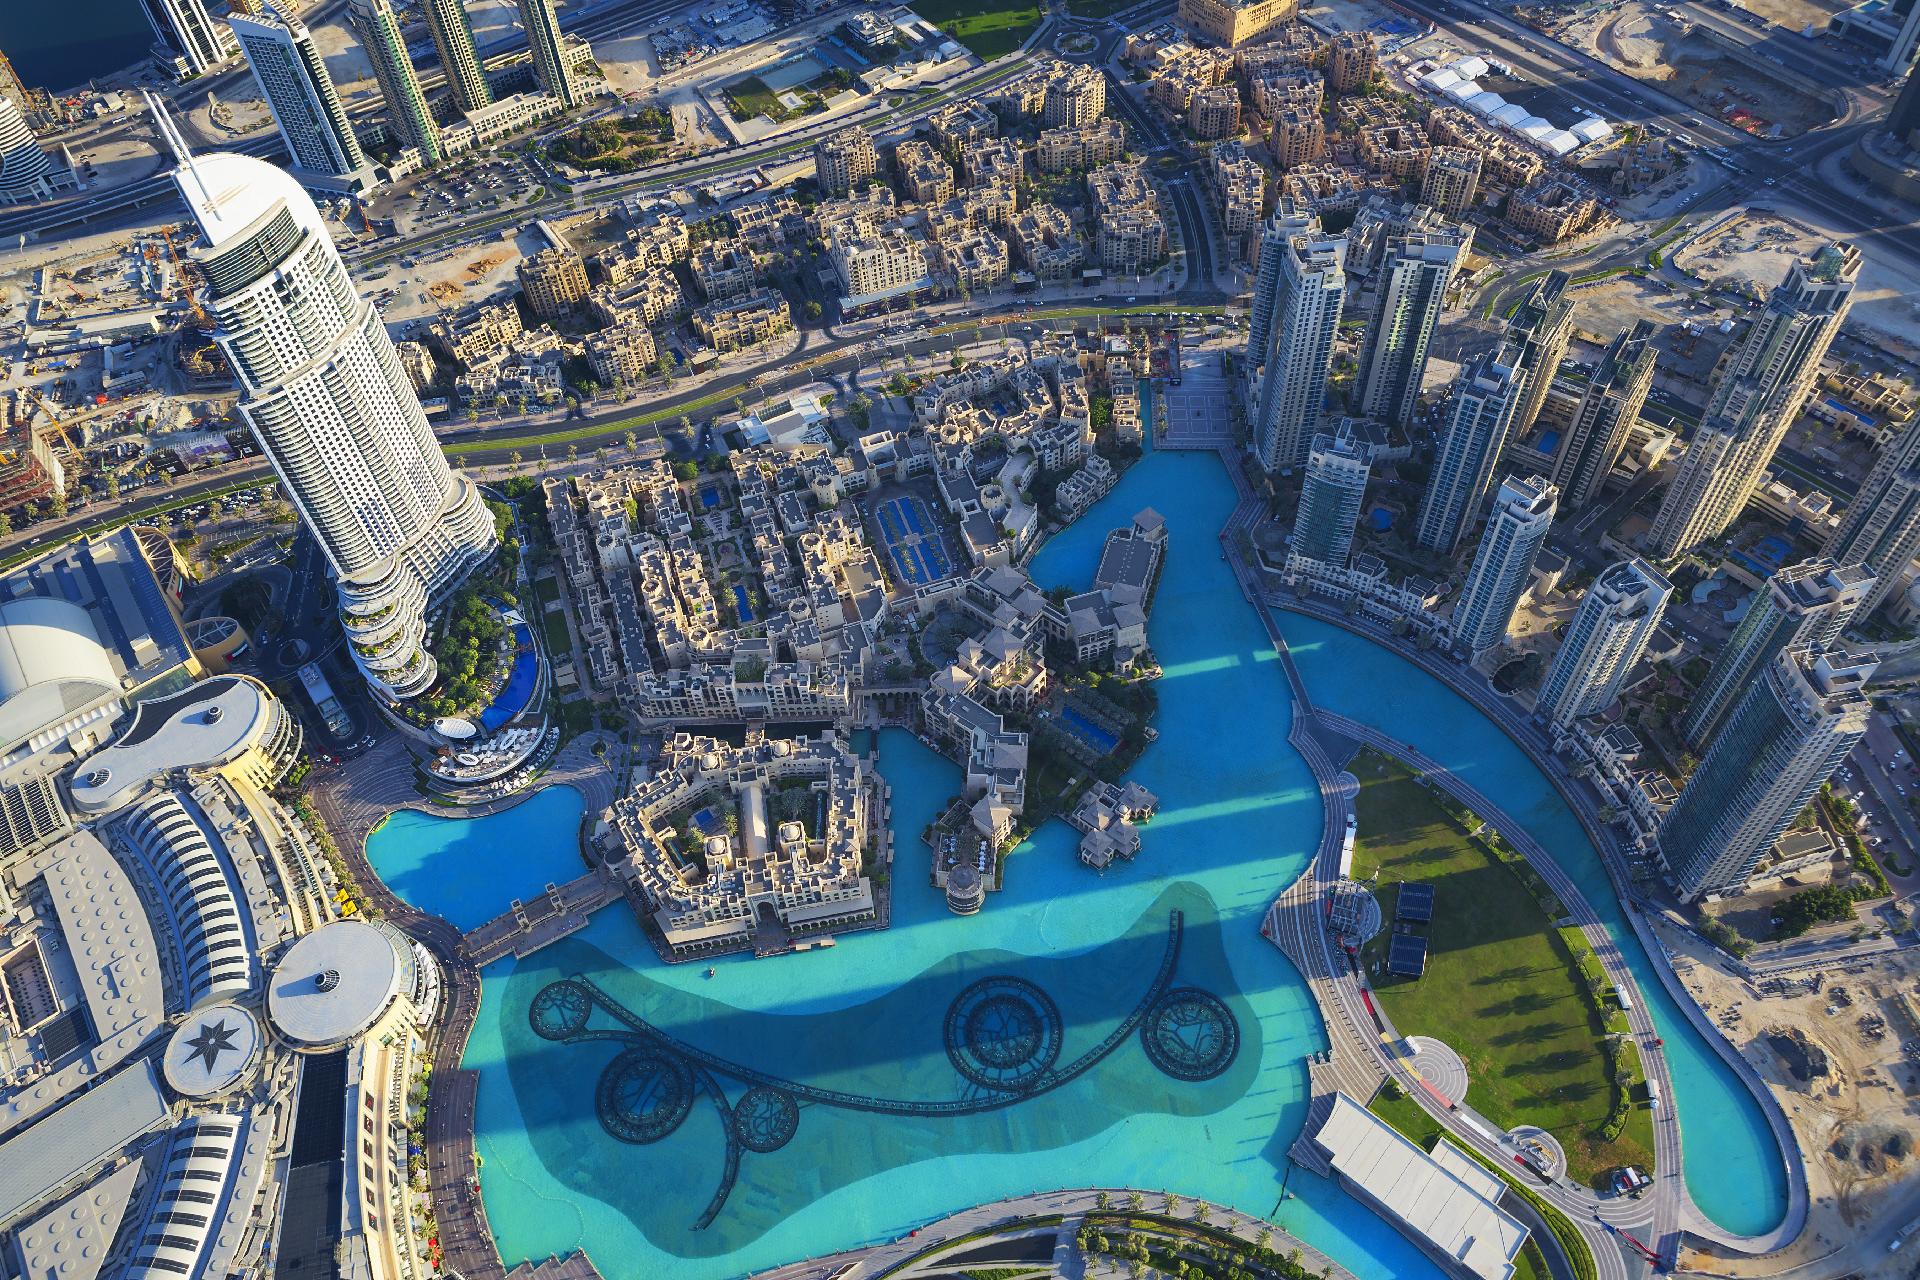 Vista de la ciudad de Dubái desde lo alto de una torre